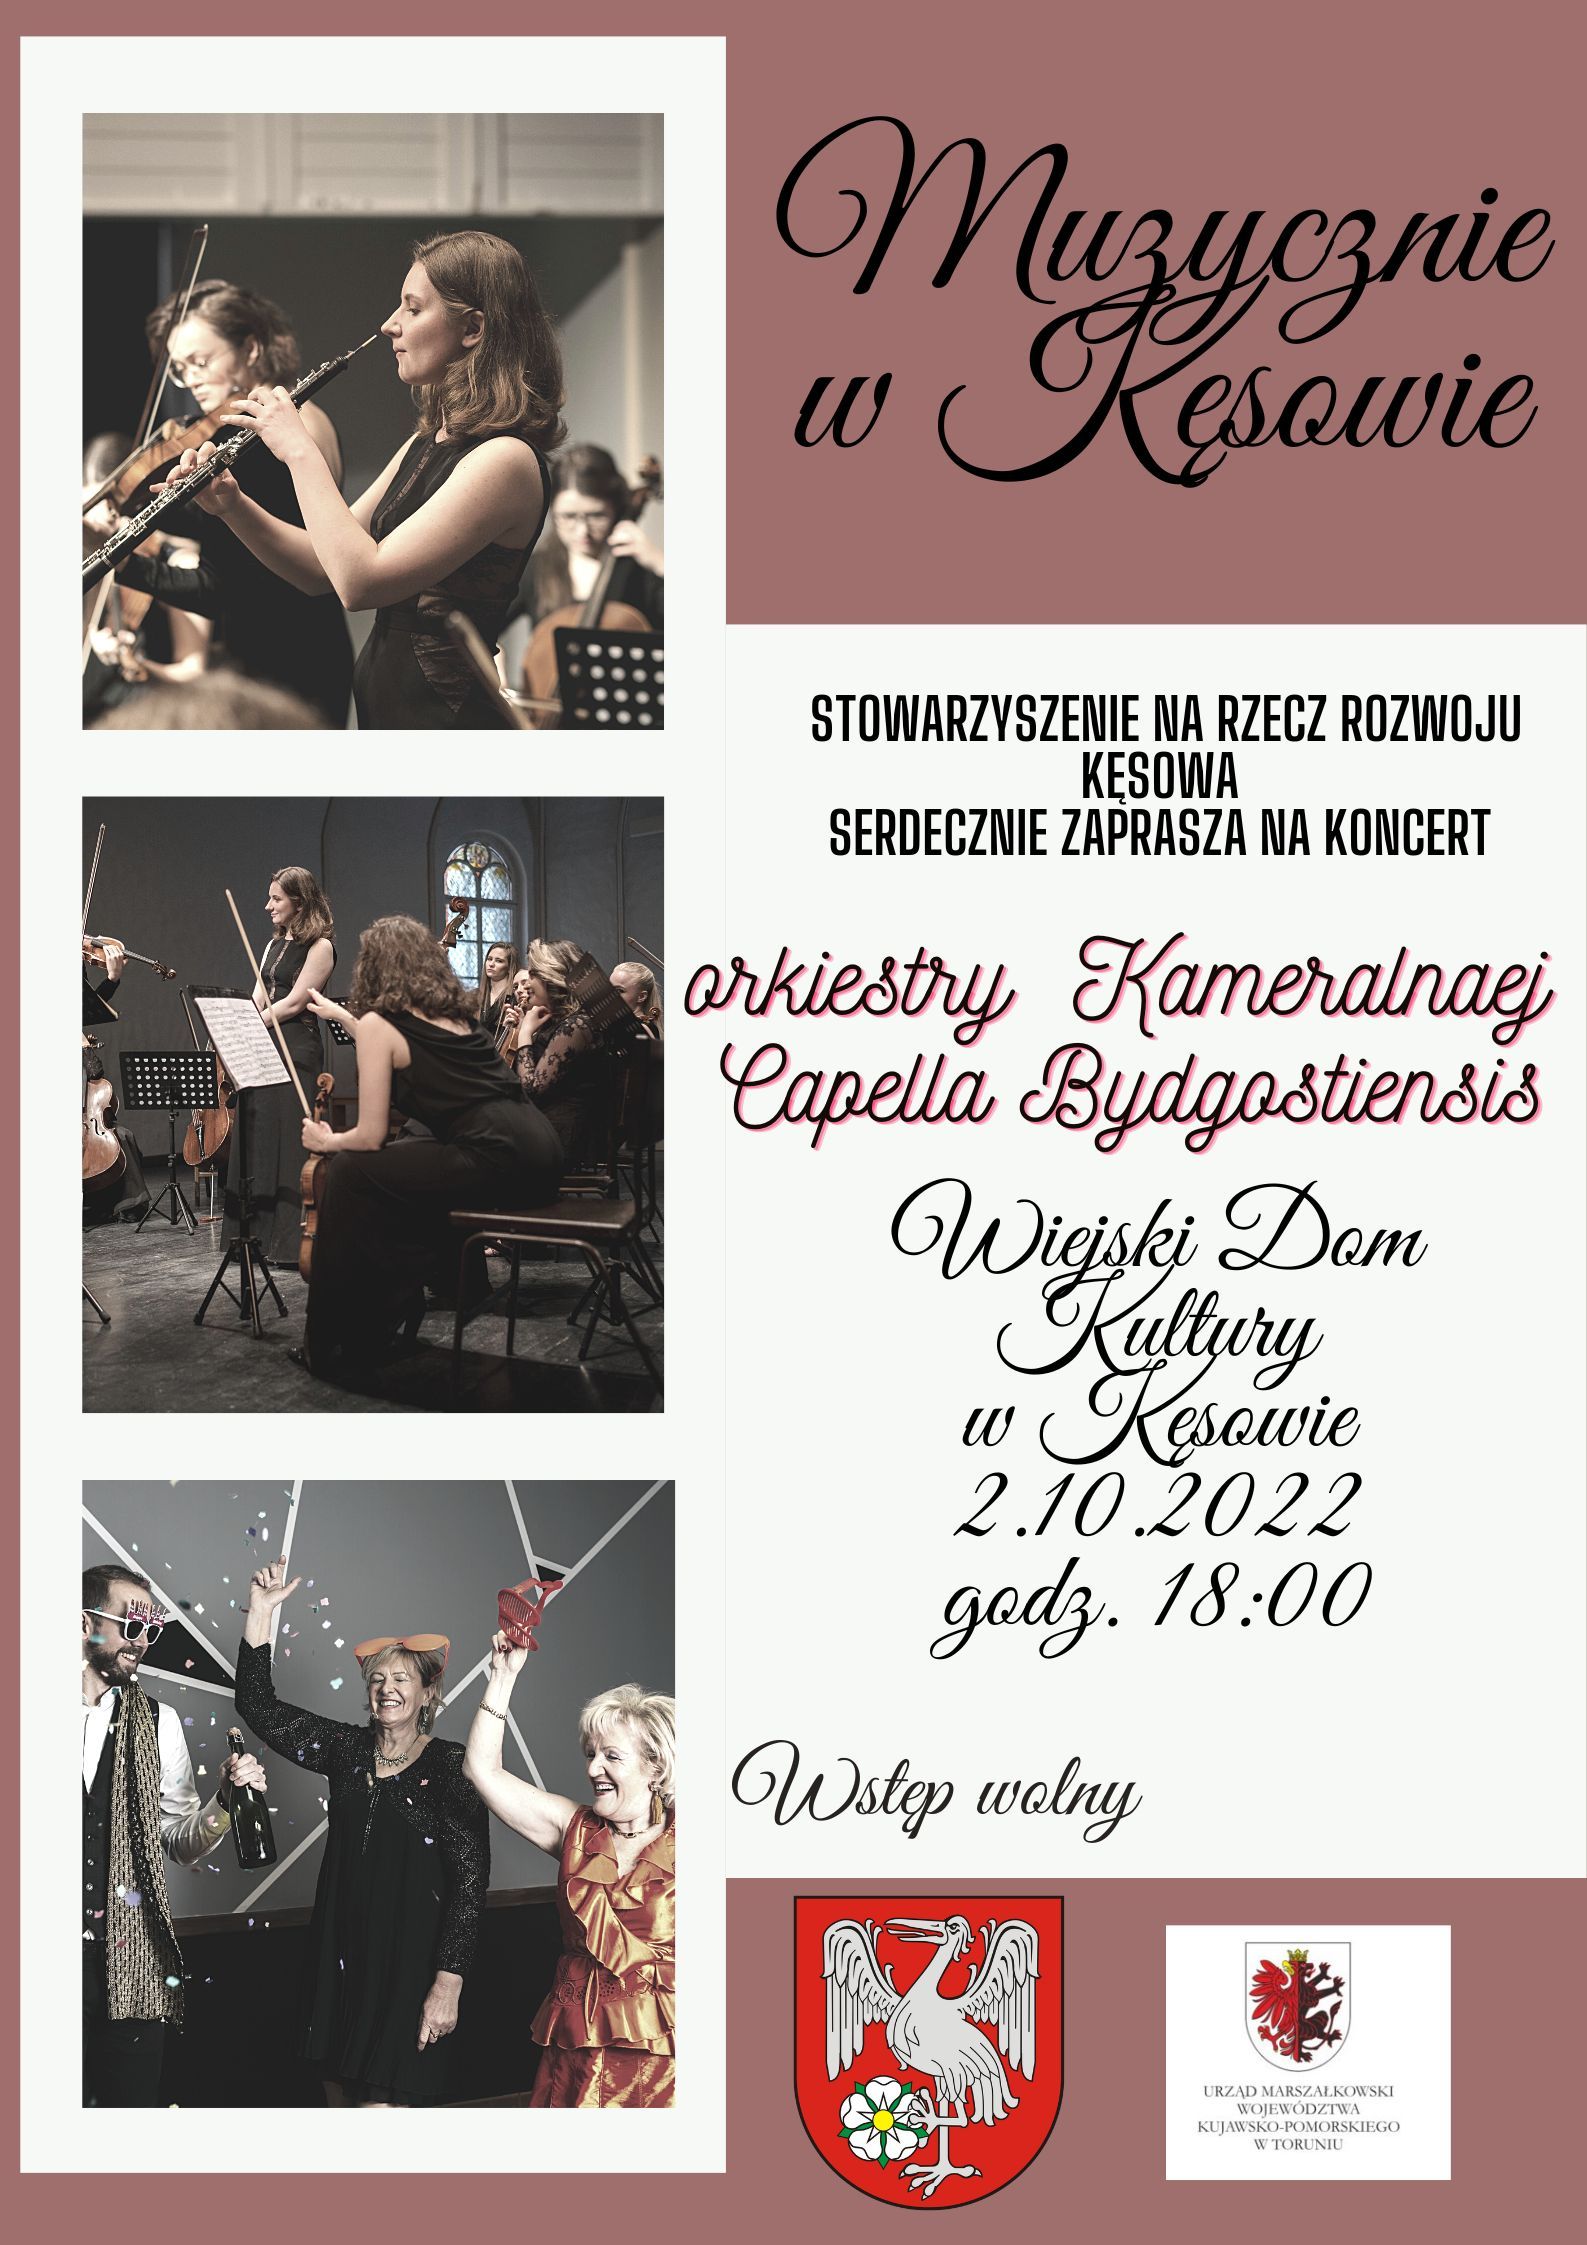 koncert muzyki poważnej w wykonaniu orkiestry kameralnej Capella Bydgostitiensis